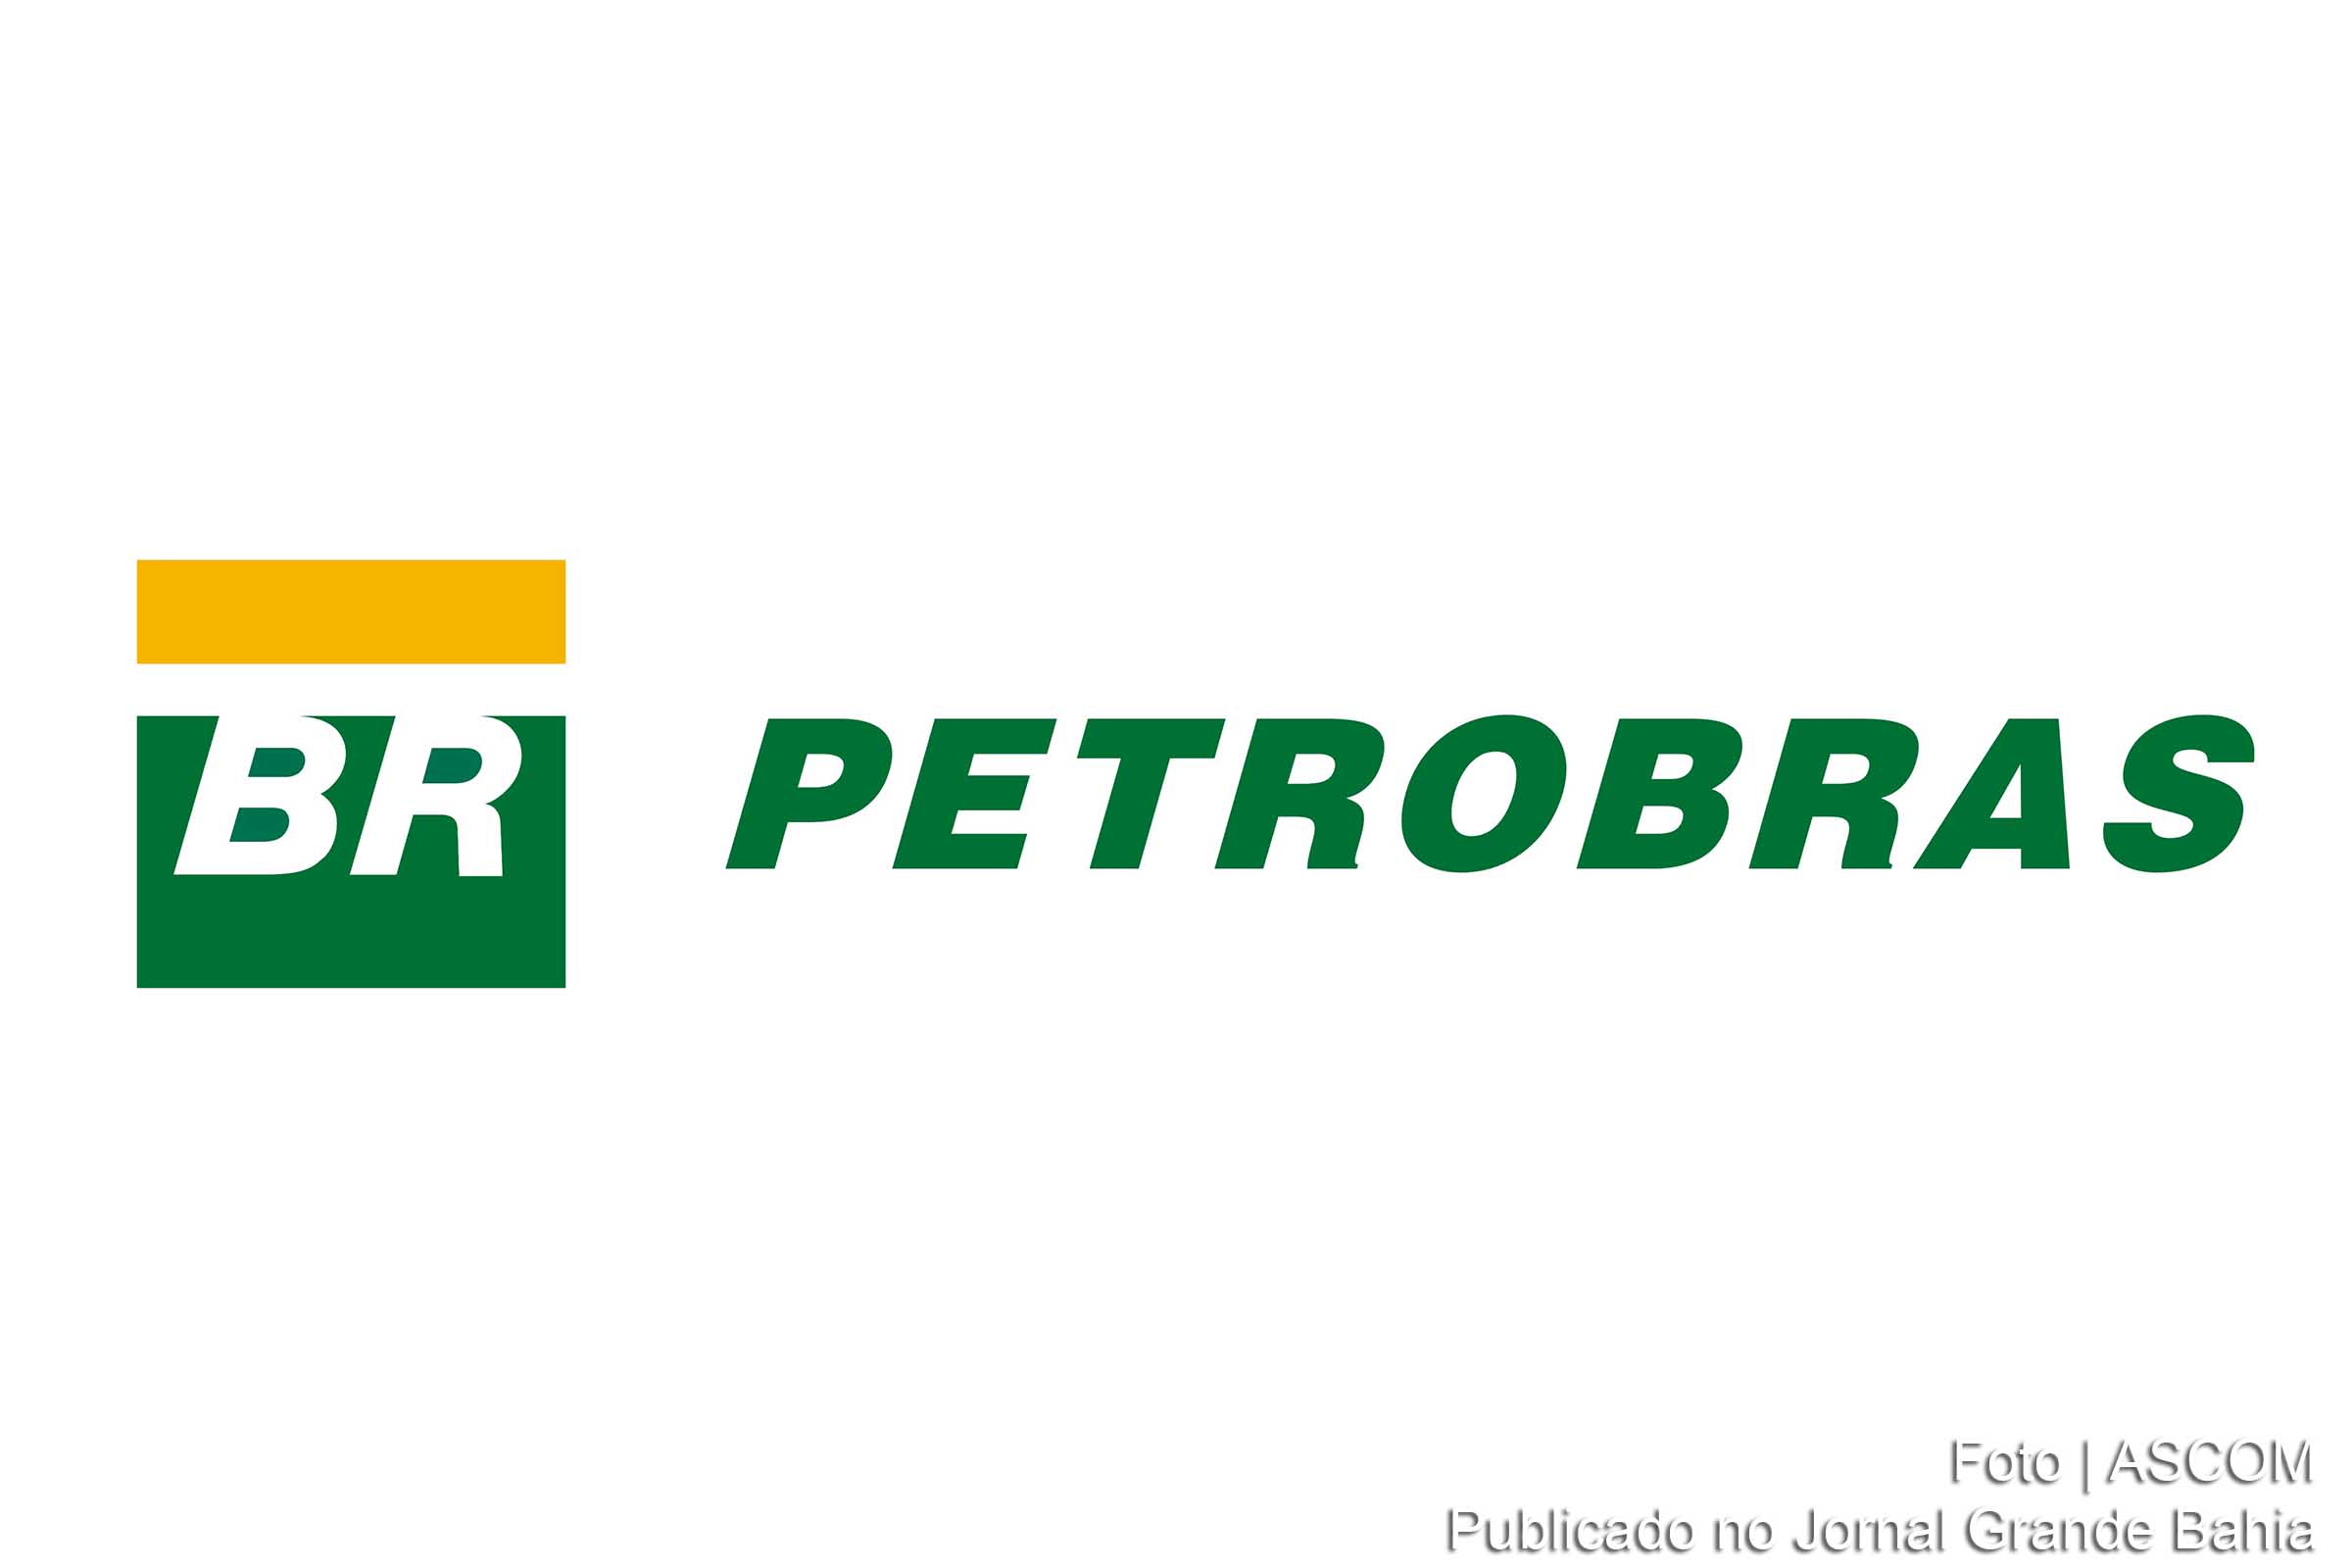 Logomarcas da BR Distribuidora e da Petrobras.